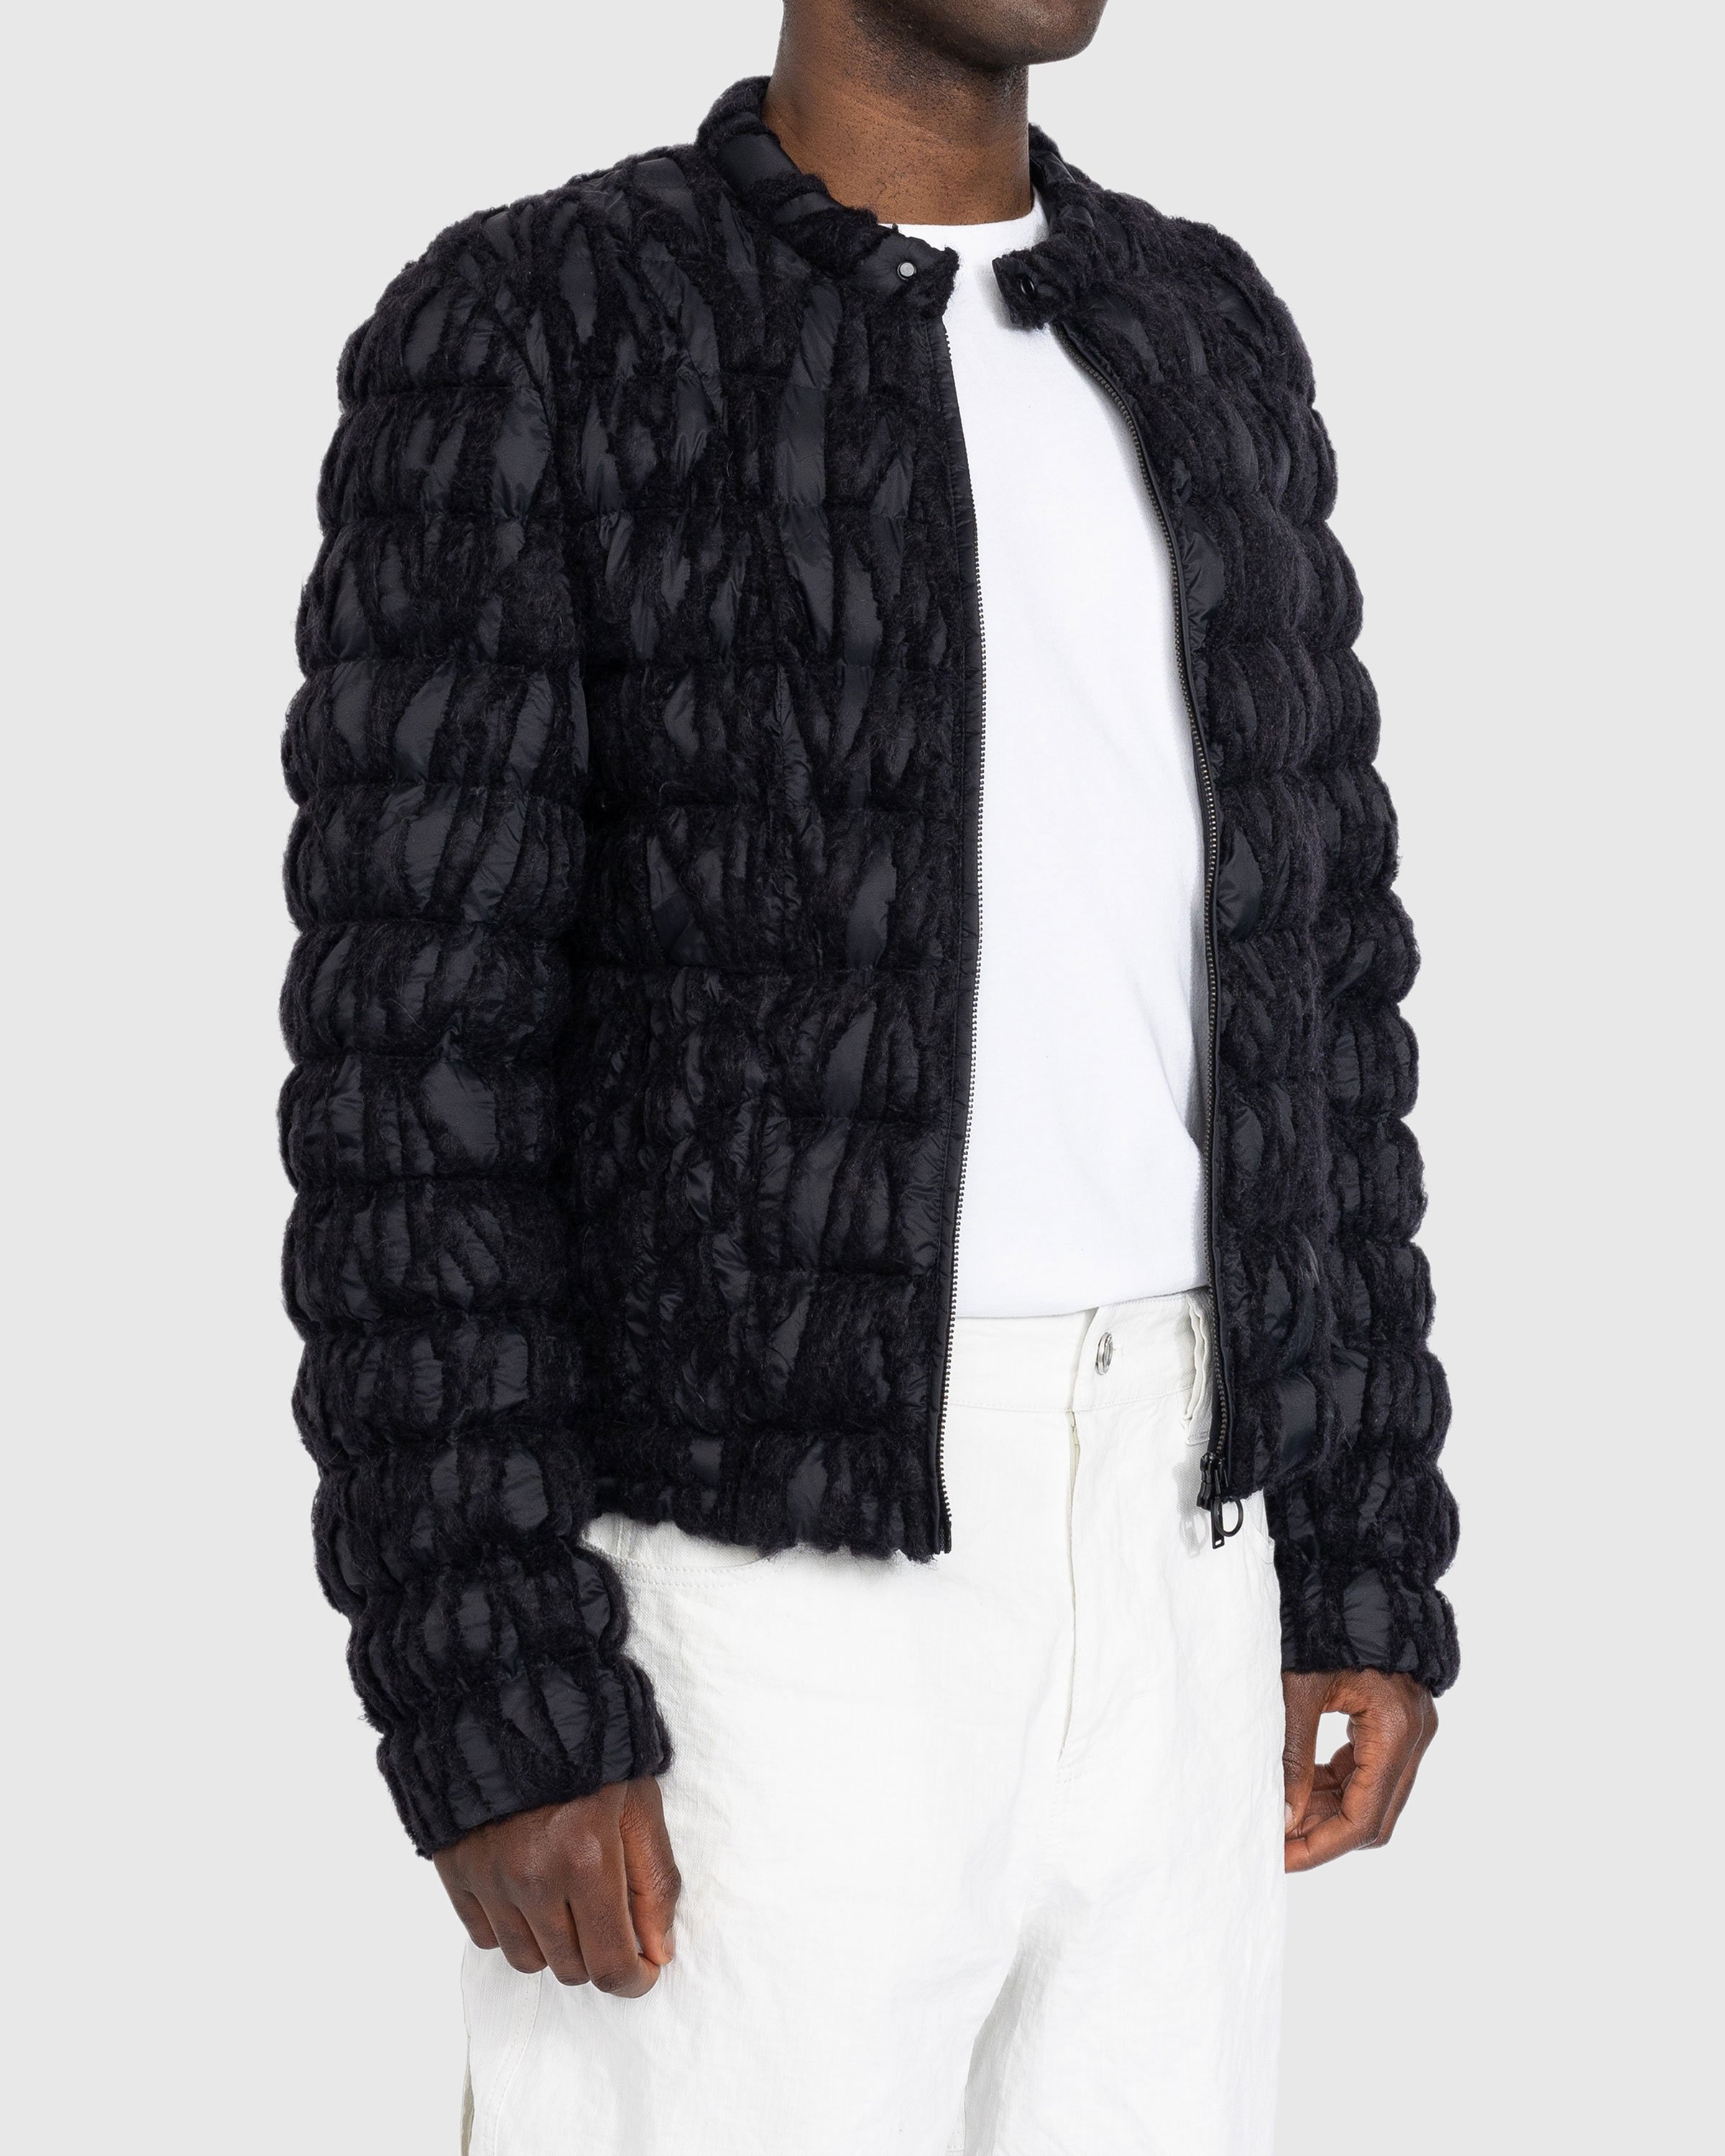 Trussardi - Embroidered Nylon Jacket Black - Clothing - Black - Image 3